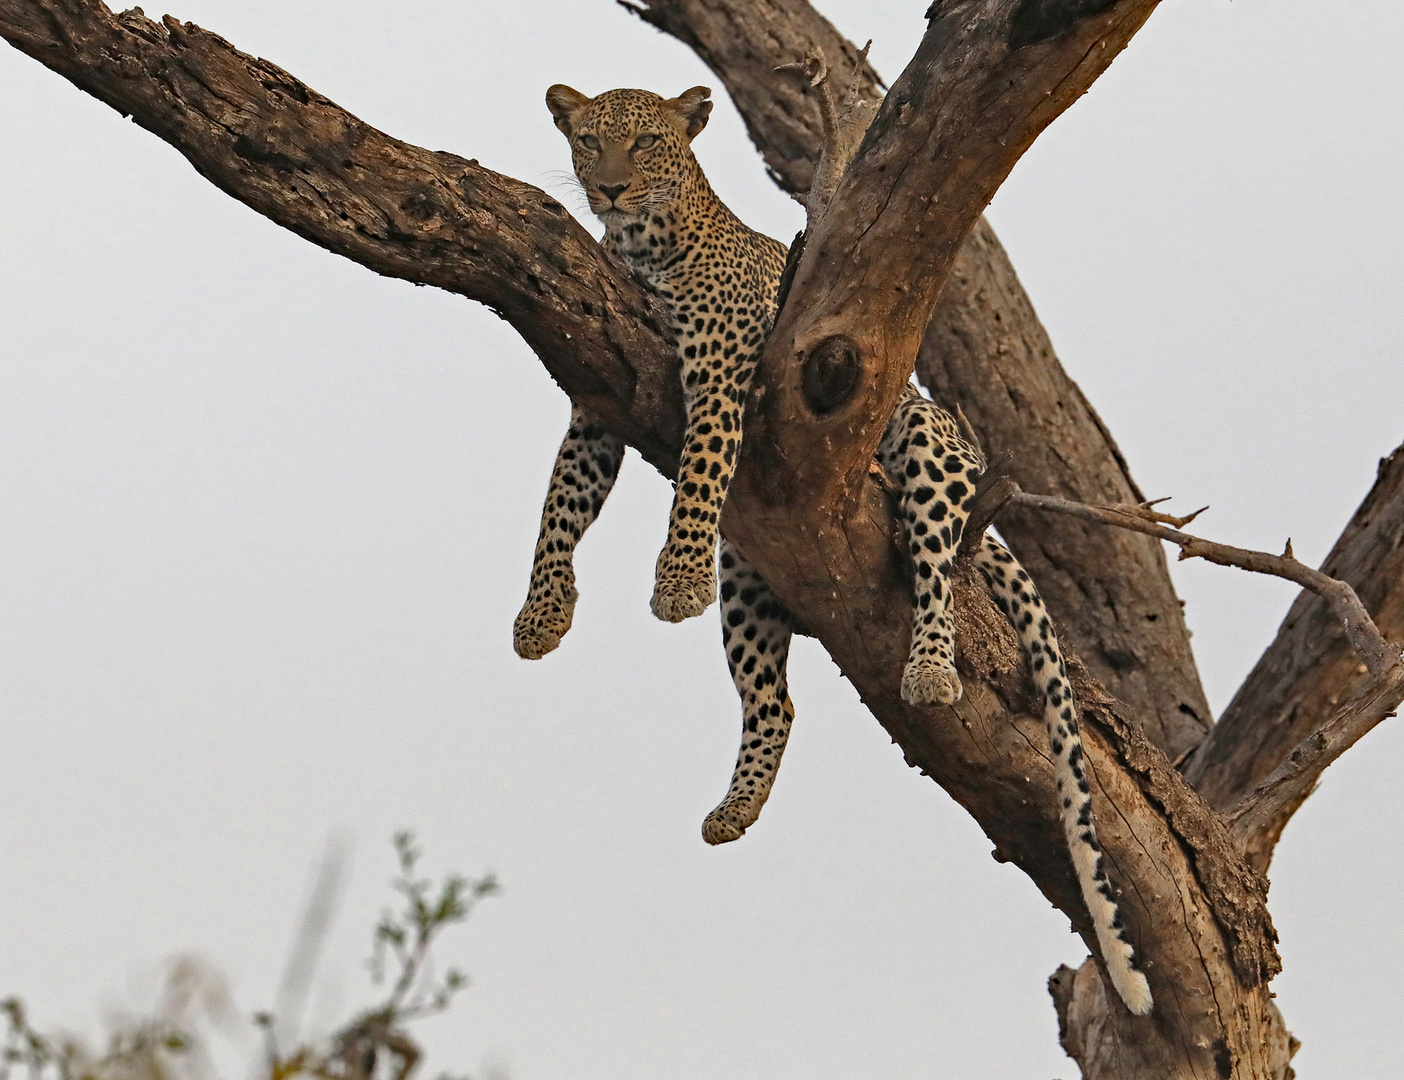 Leopard hangs in the tree